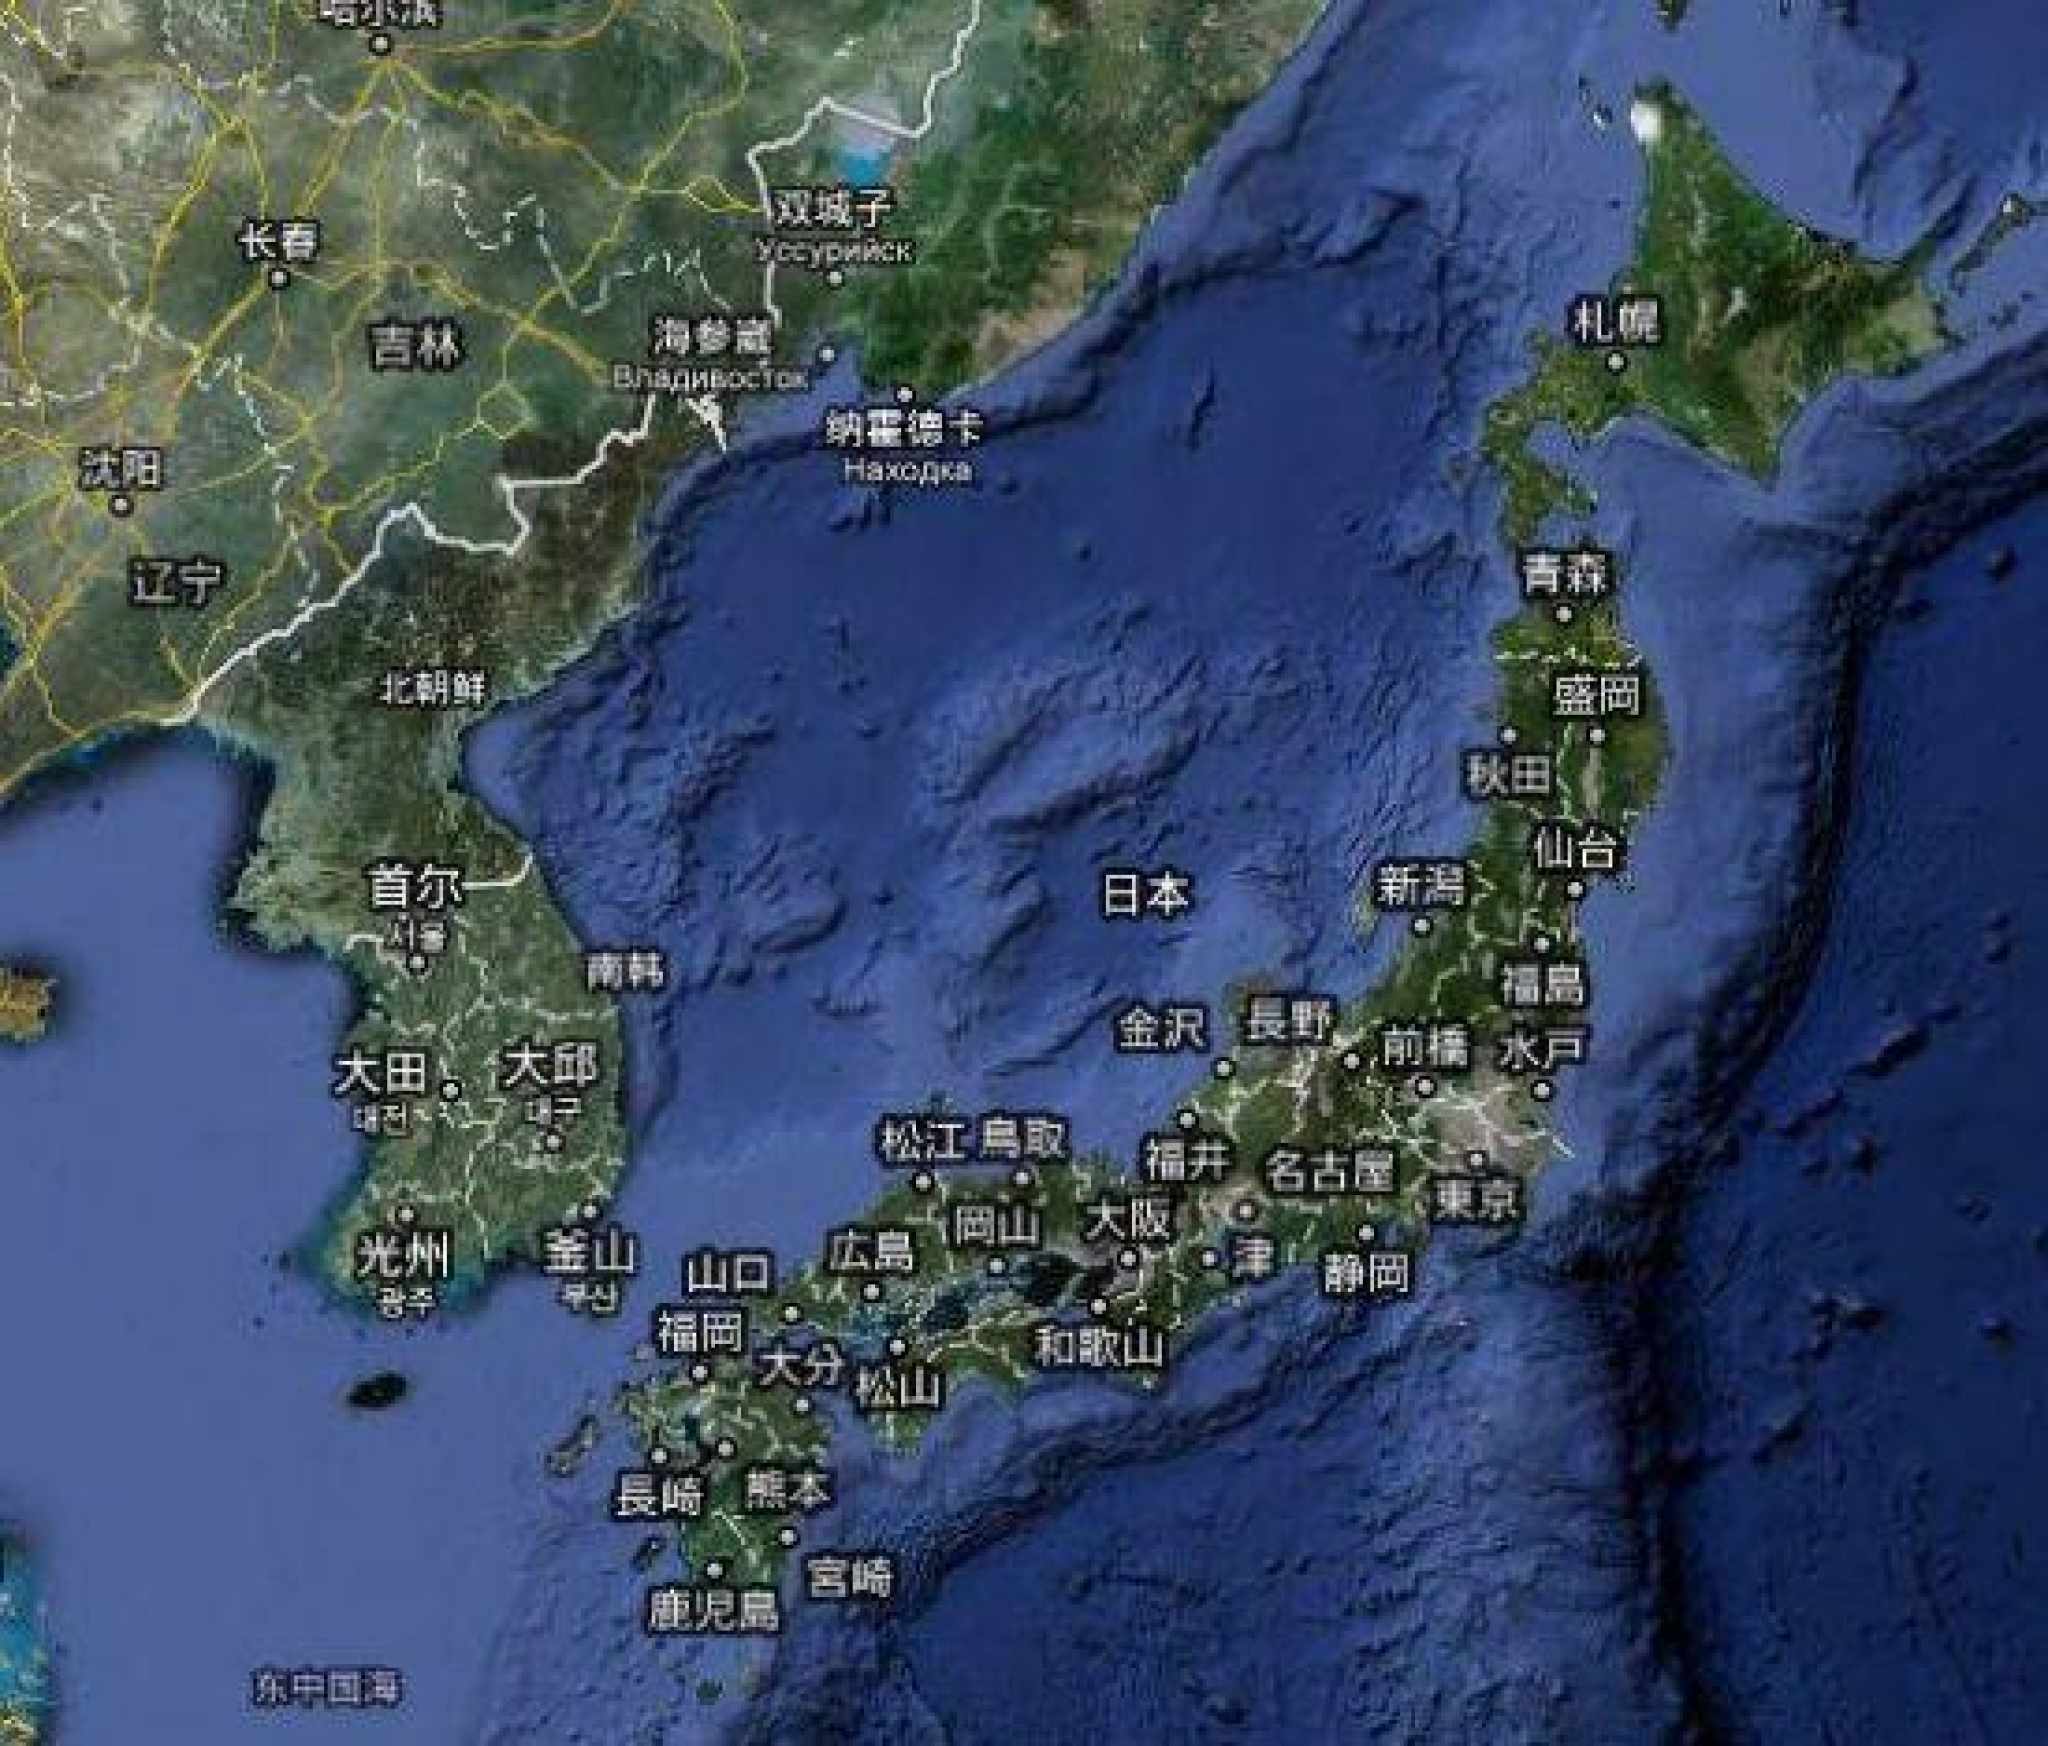 日本的国土面积和人口_中国现有的国土面积和人口是多少